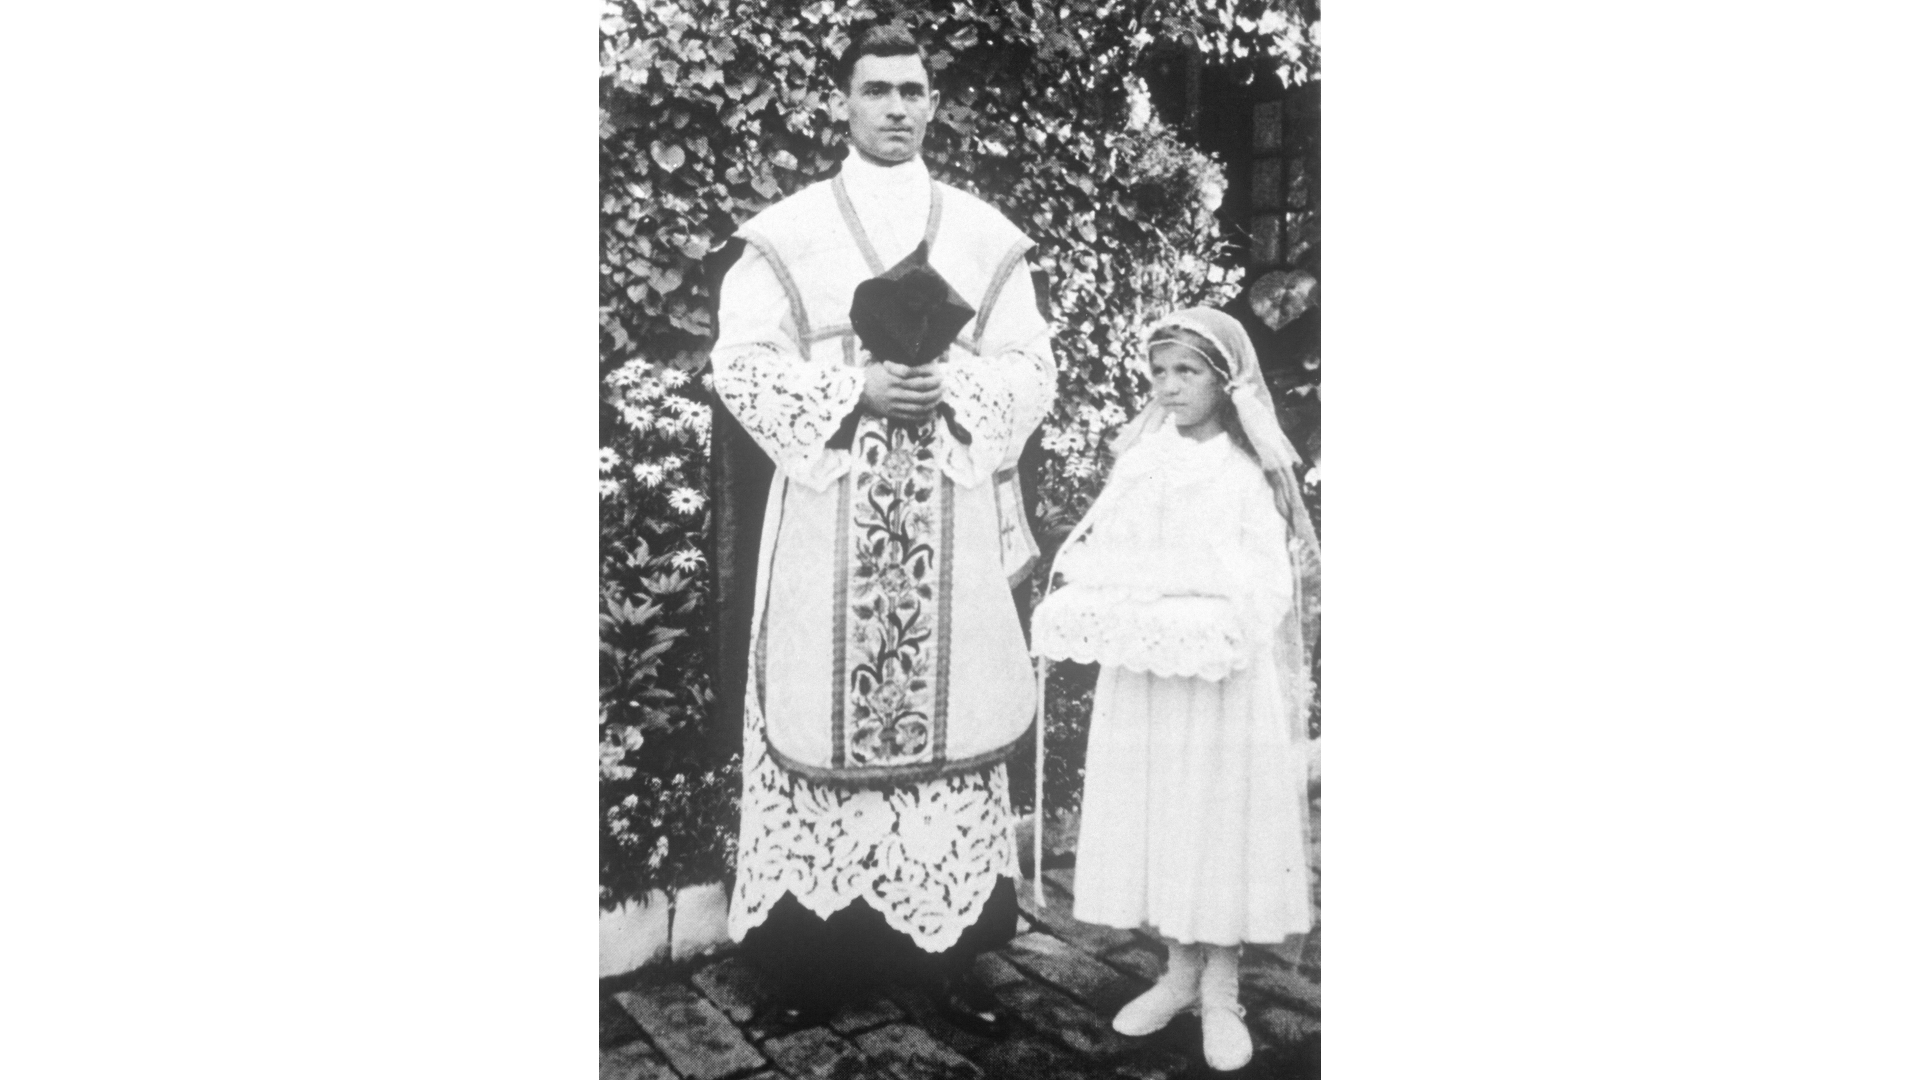 Mathias Johler wurde am 29.6.1937 zum Priester geweiht. Die Primizbraut ist seine Schwester Sophia Johler. Foto: Archiv Freundeskreis Filipowa